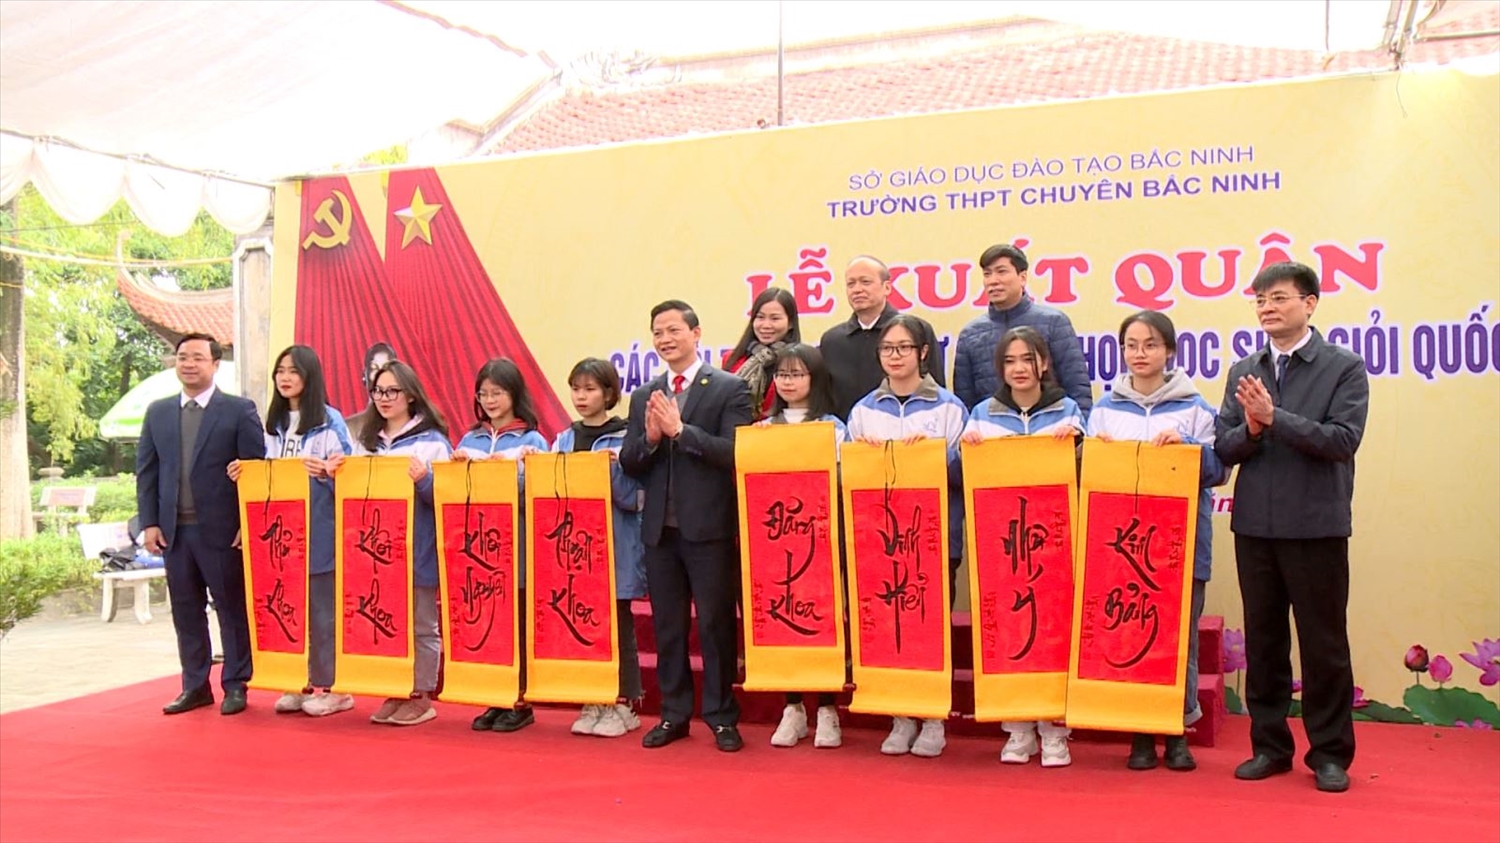  Lễ xuất quân của đoàn Bắc Ninh tham gia học sinh giỏi quốc gia năm 2020-2021.